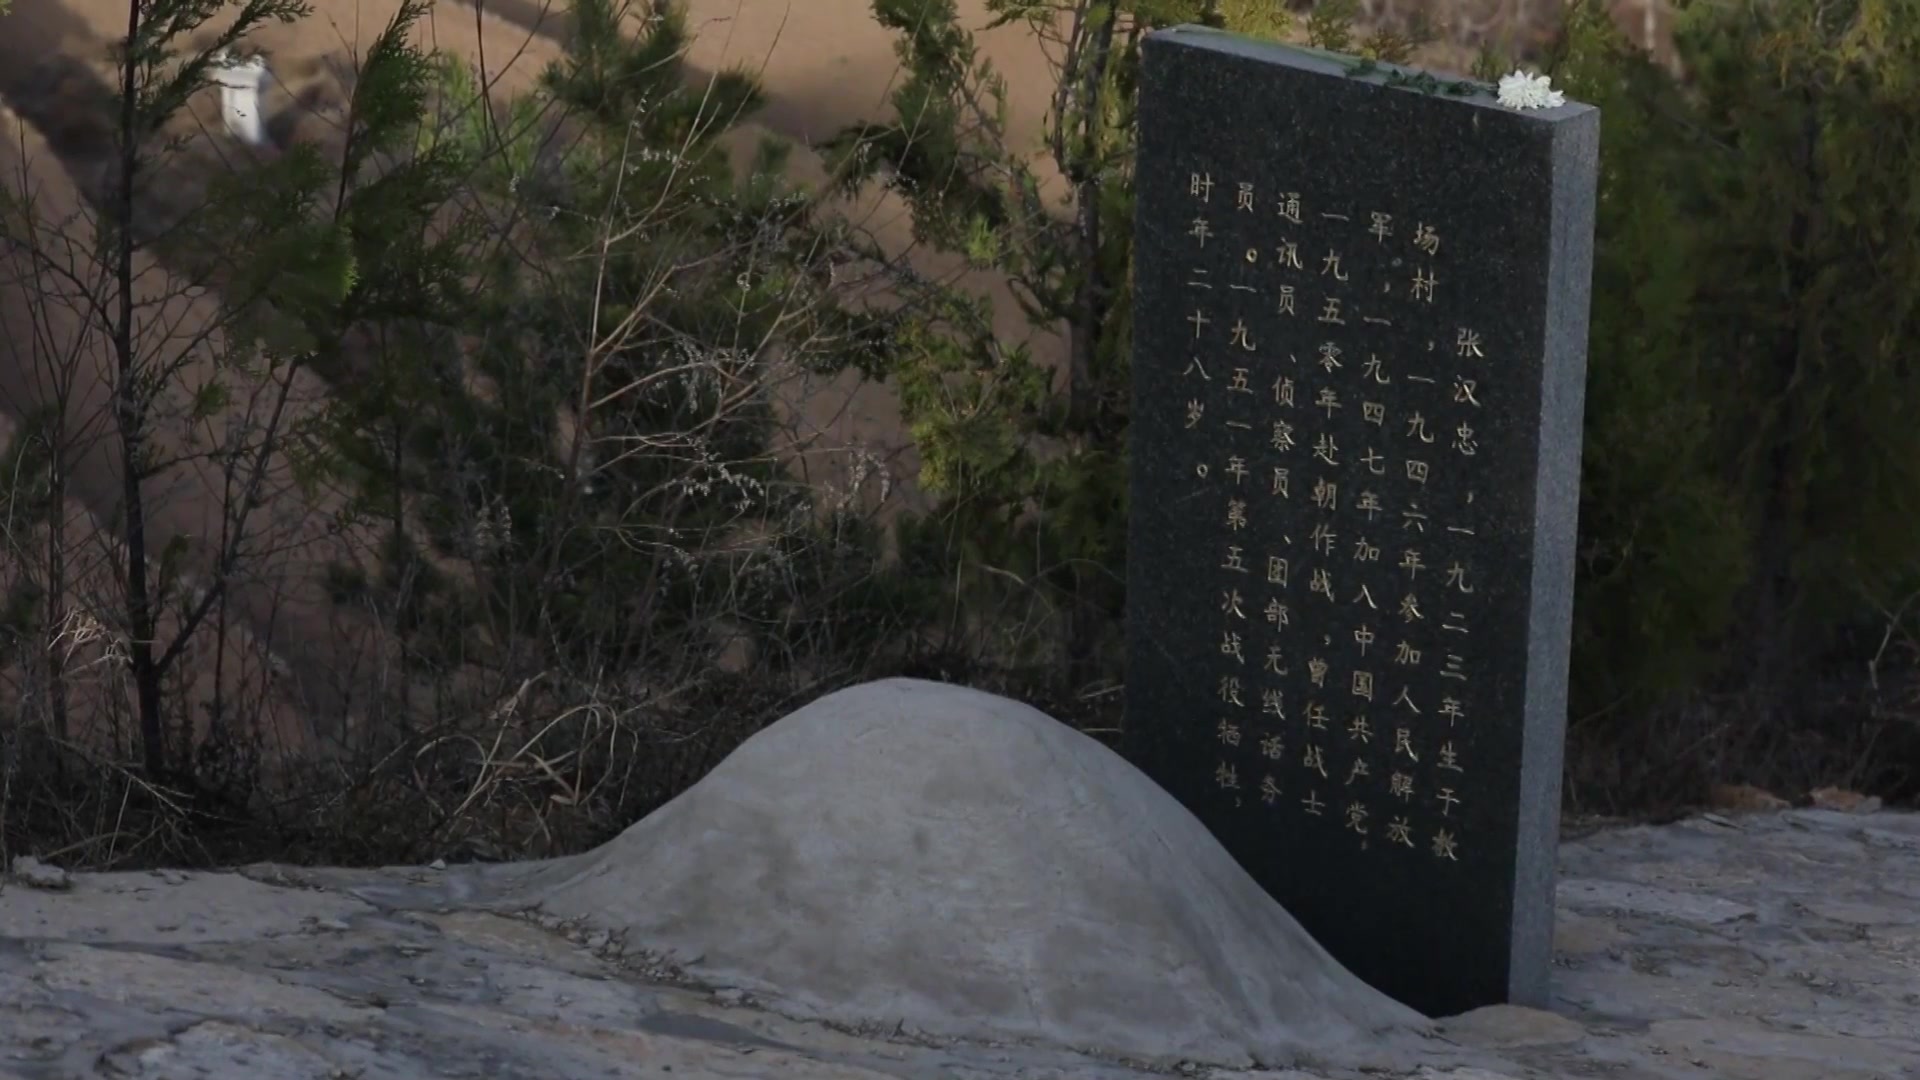 陈益峰：甲胄藏珠穴，四川军阀杨森的家族祖坟区域 - 土木在线